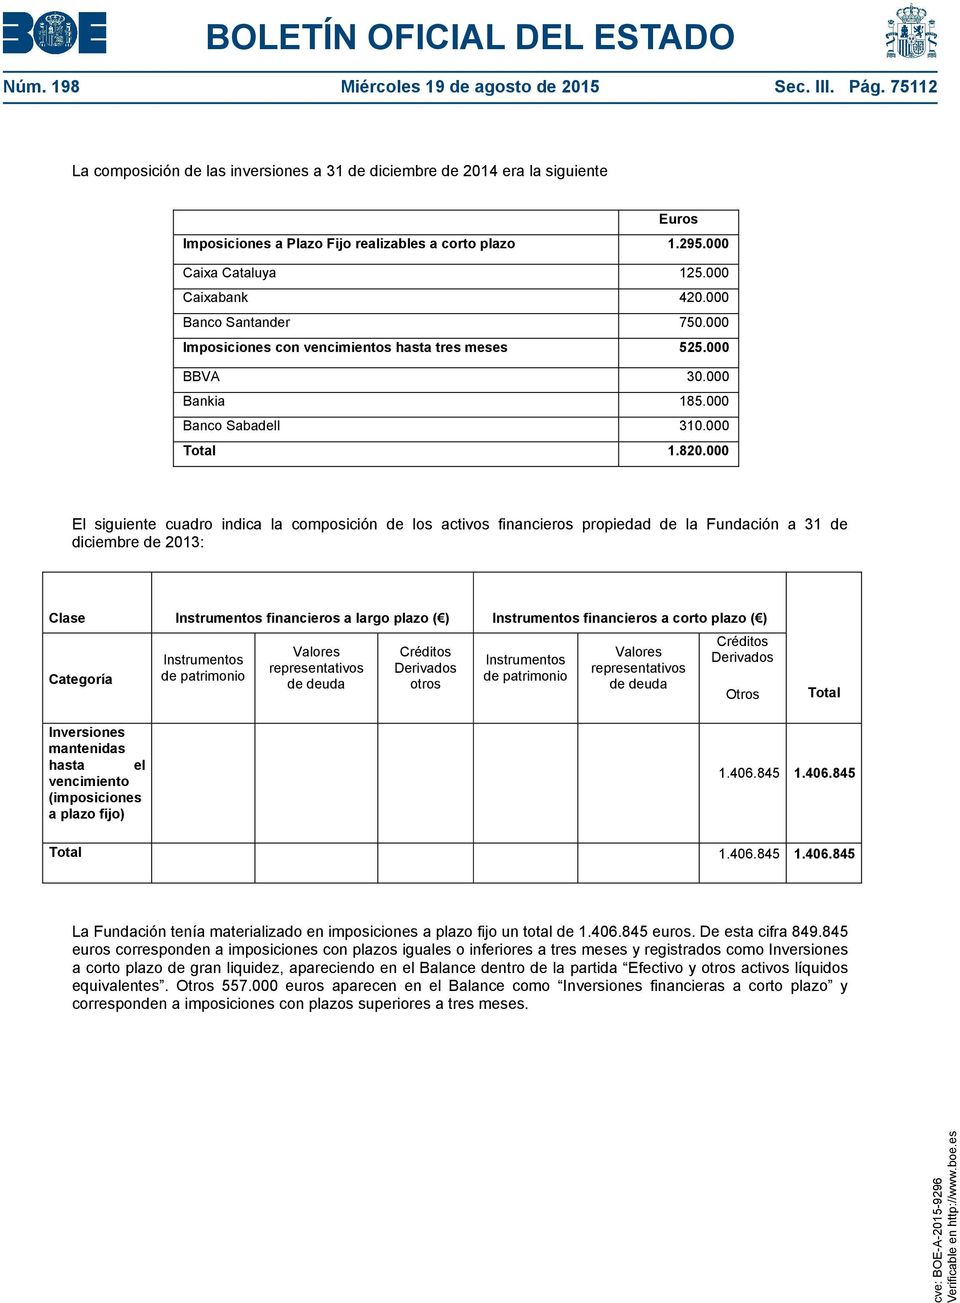 000 El siguiente cuadro indica la composición de los activos financieros propiedad de la Fundación a 31 de diciembre de 2013: Clase Instrumentos financieros a largo plazo ( ) Instrumentos financieros